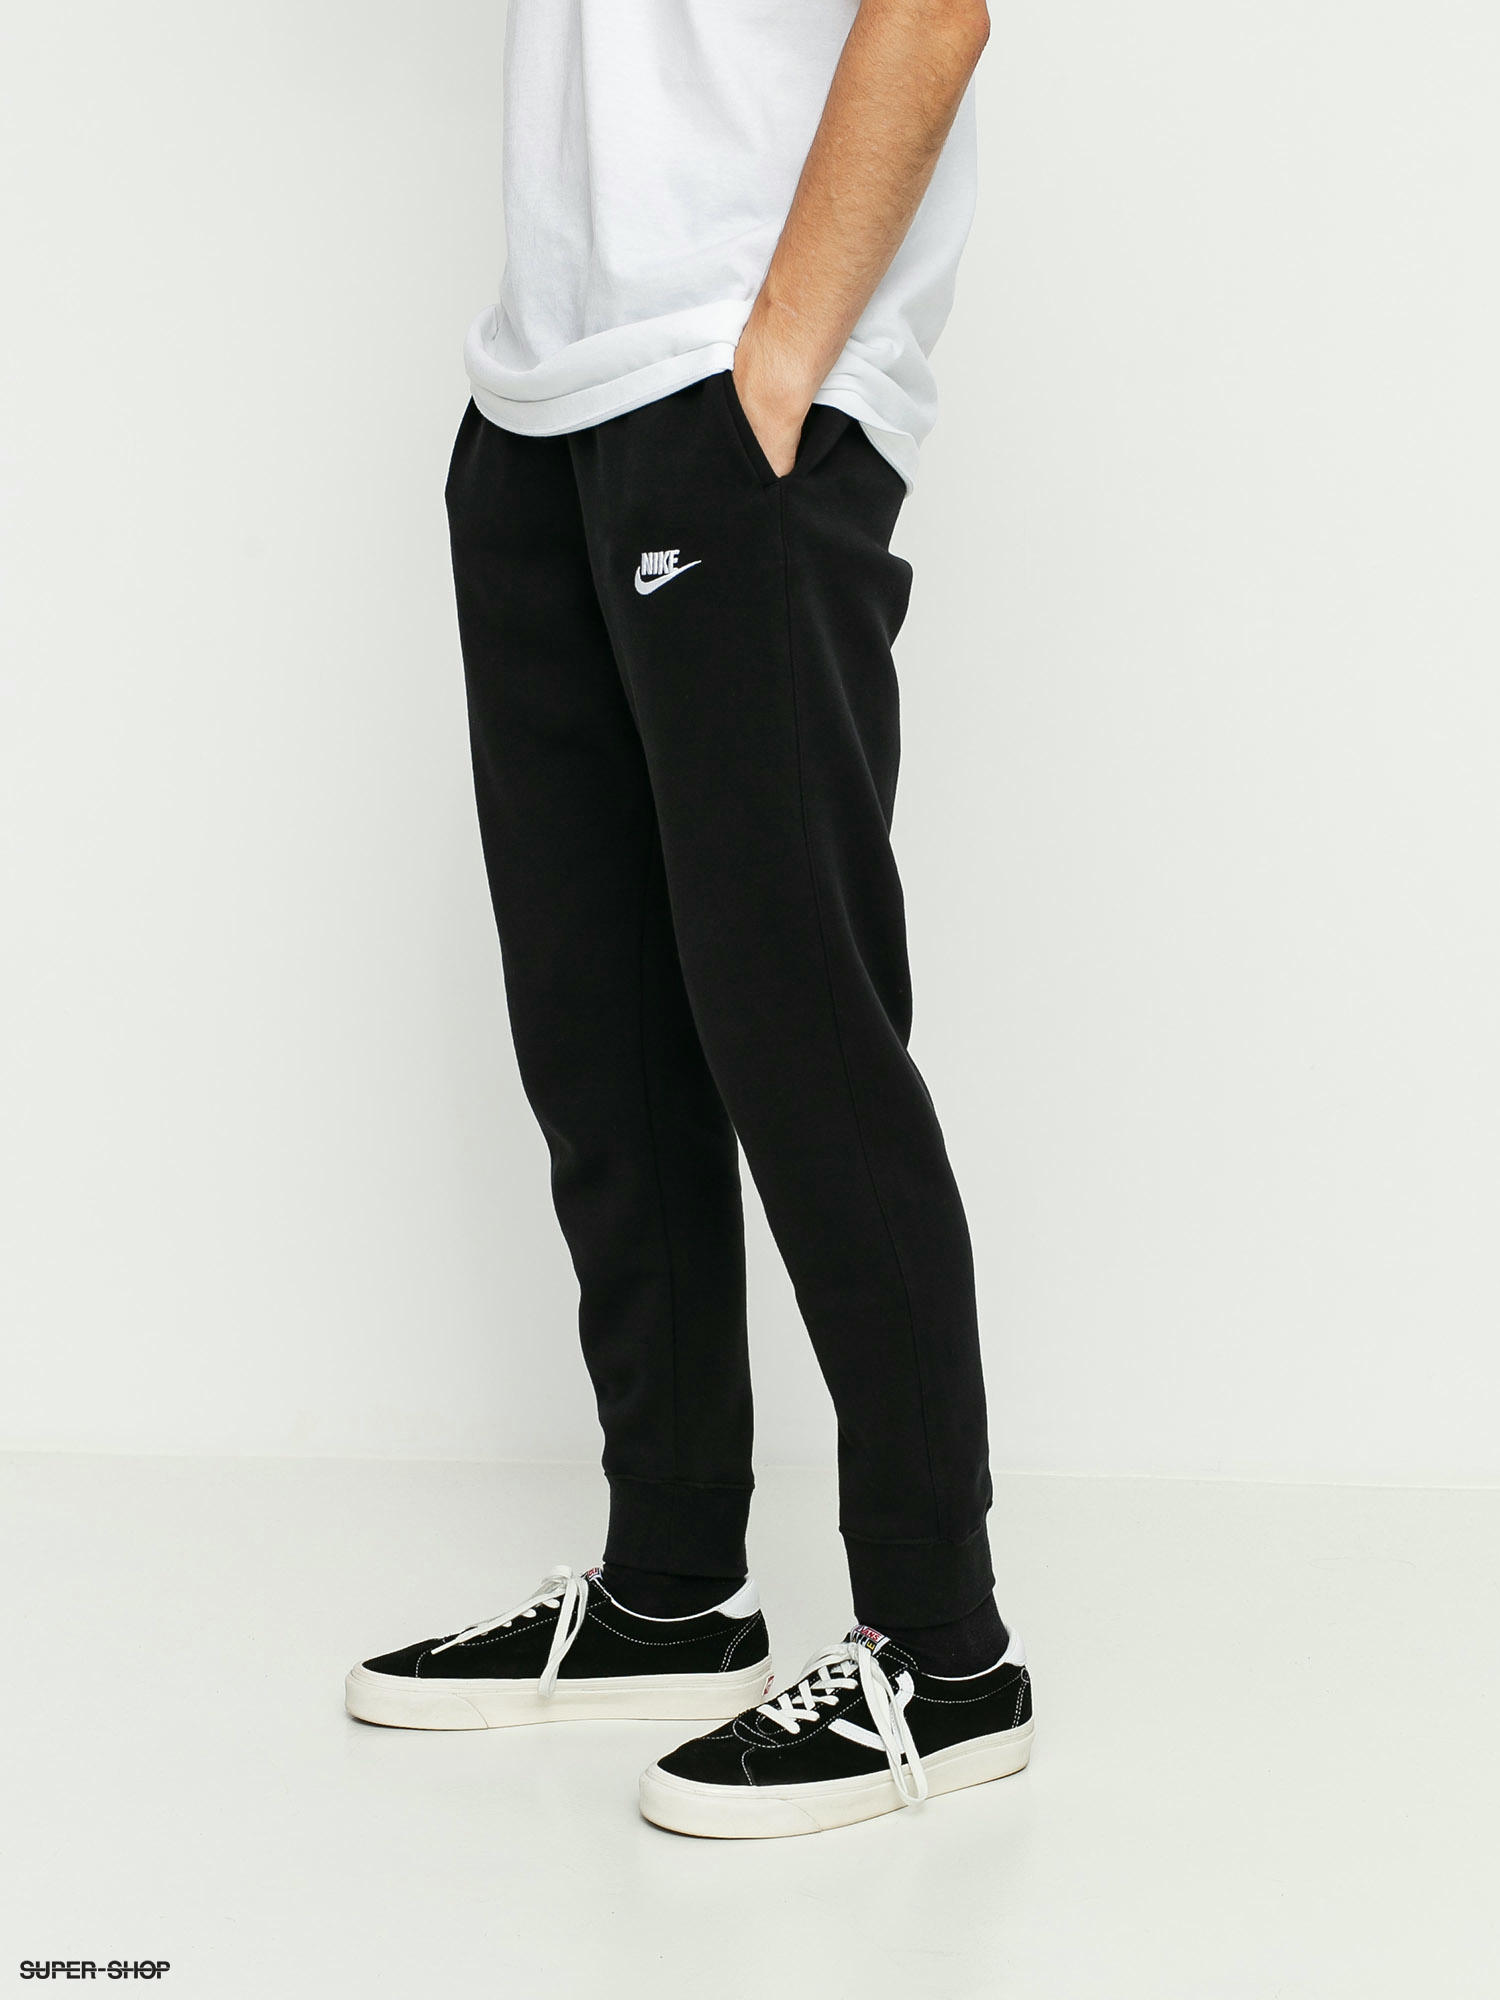 Nike Pants (black/black/white)